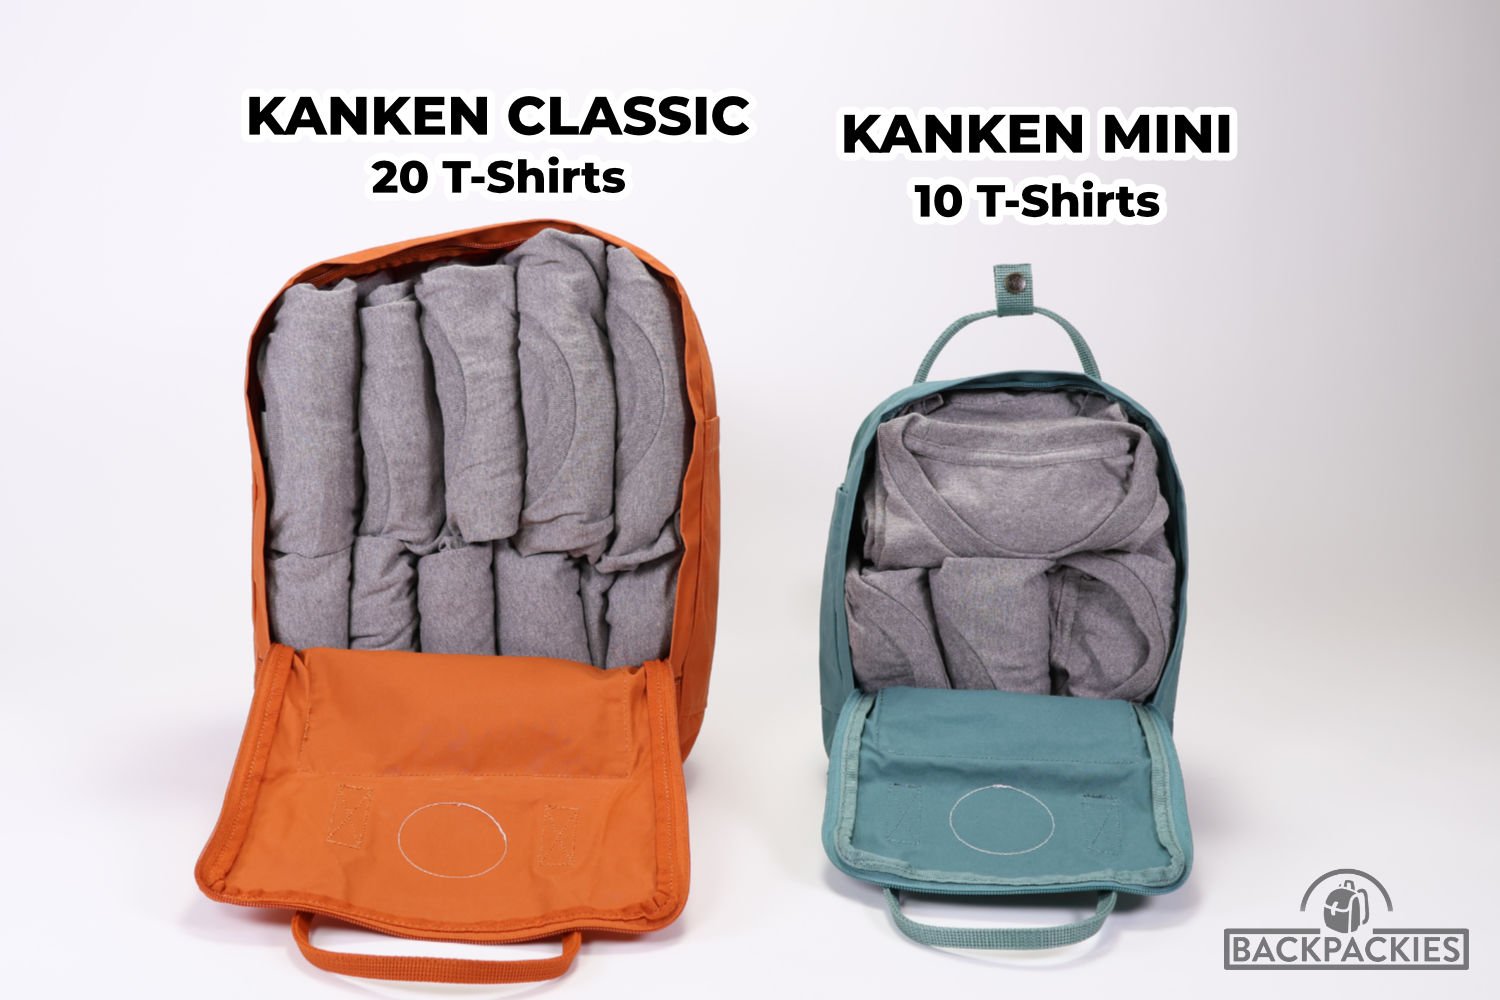 Diferencias entre la mochila Kanken Classic, Kanken Mini y Kanken Kids